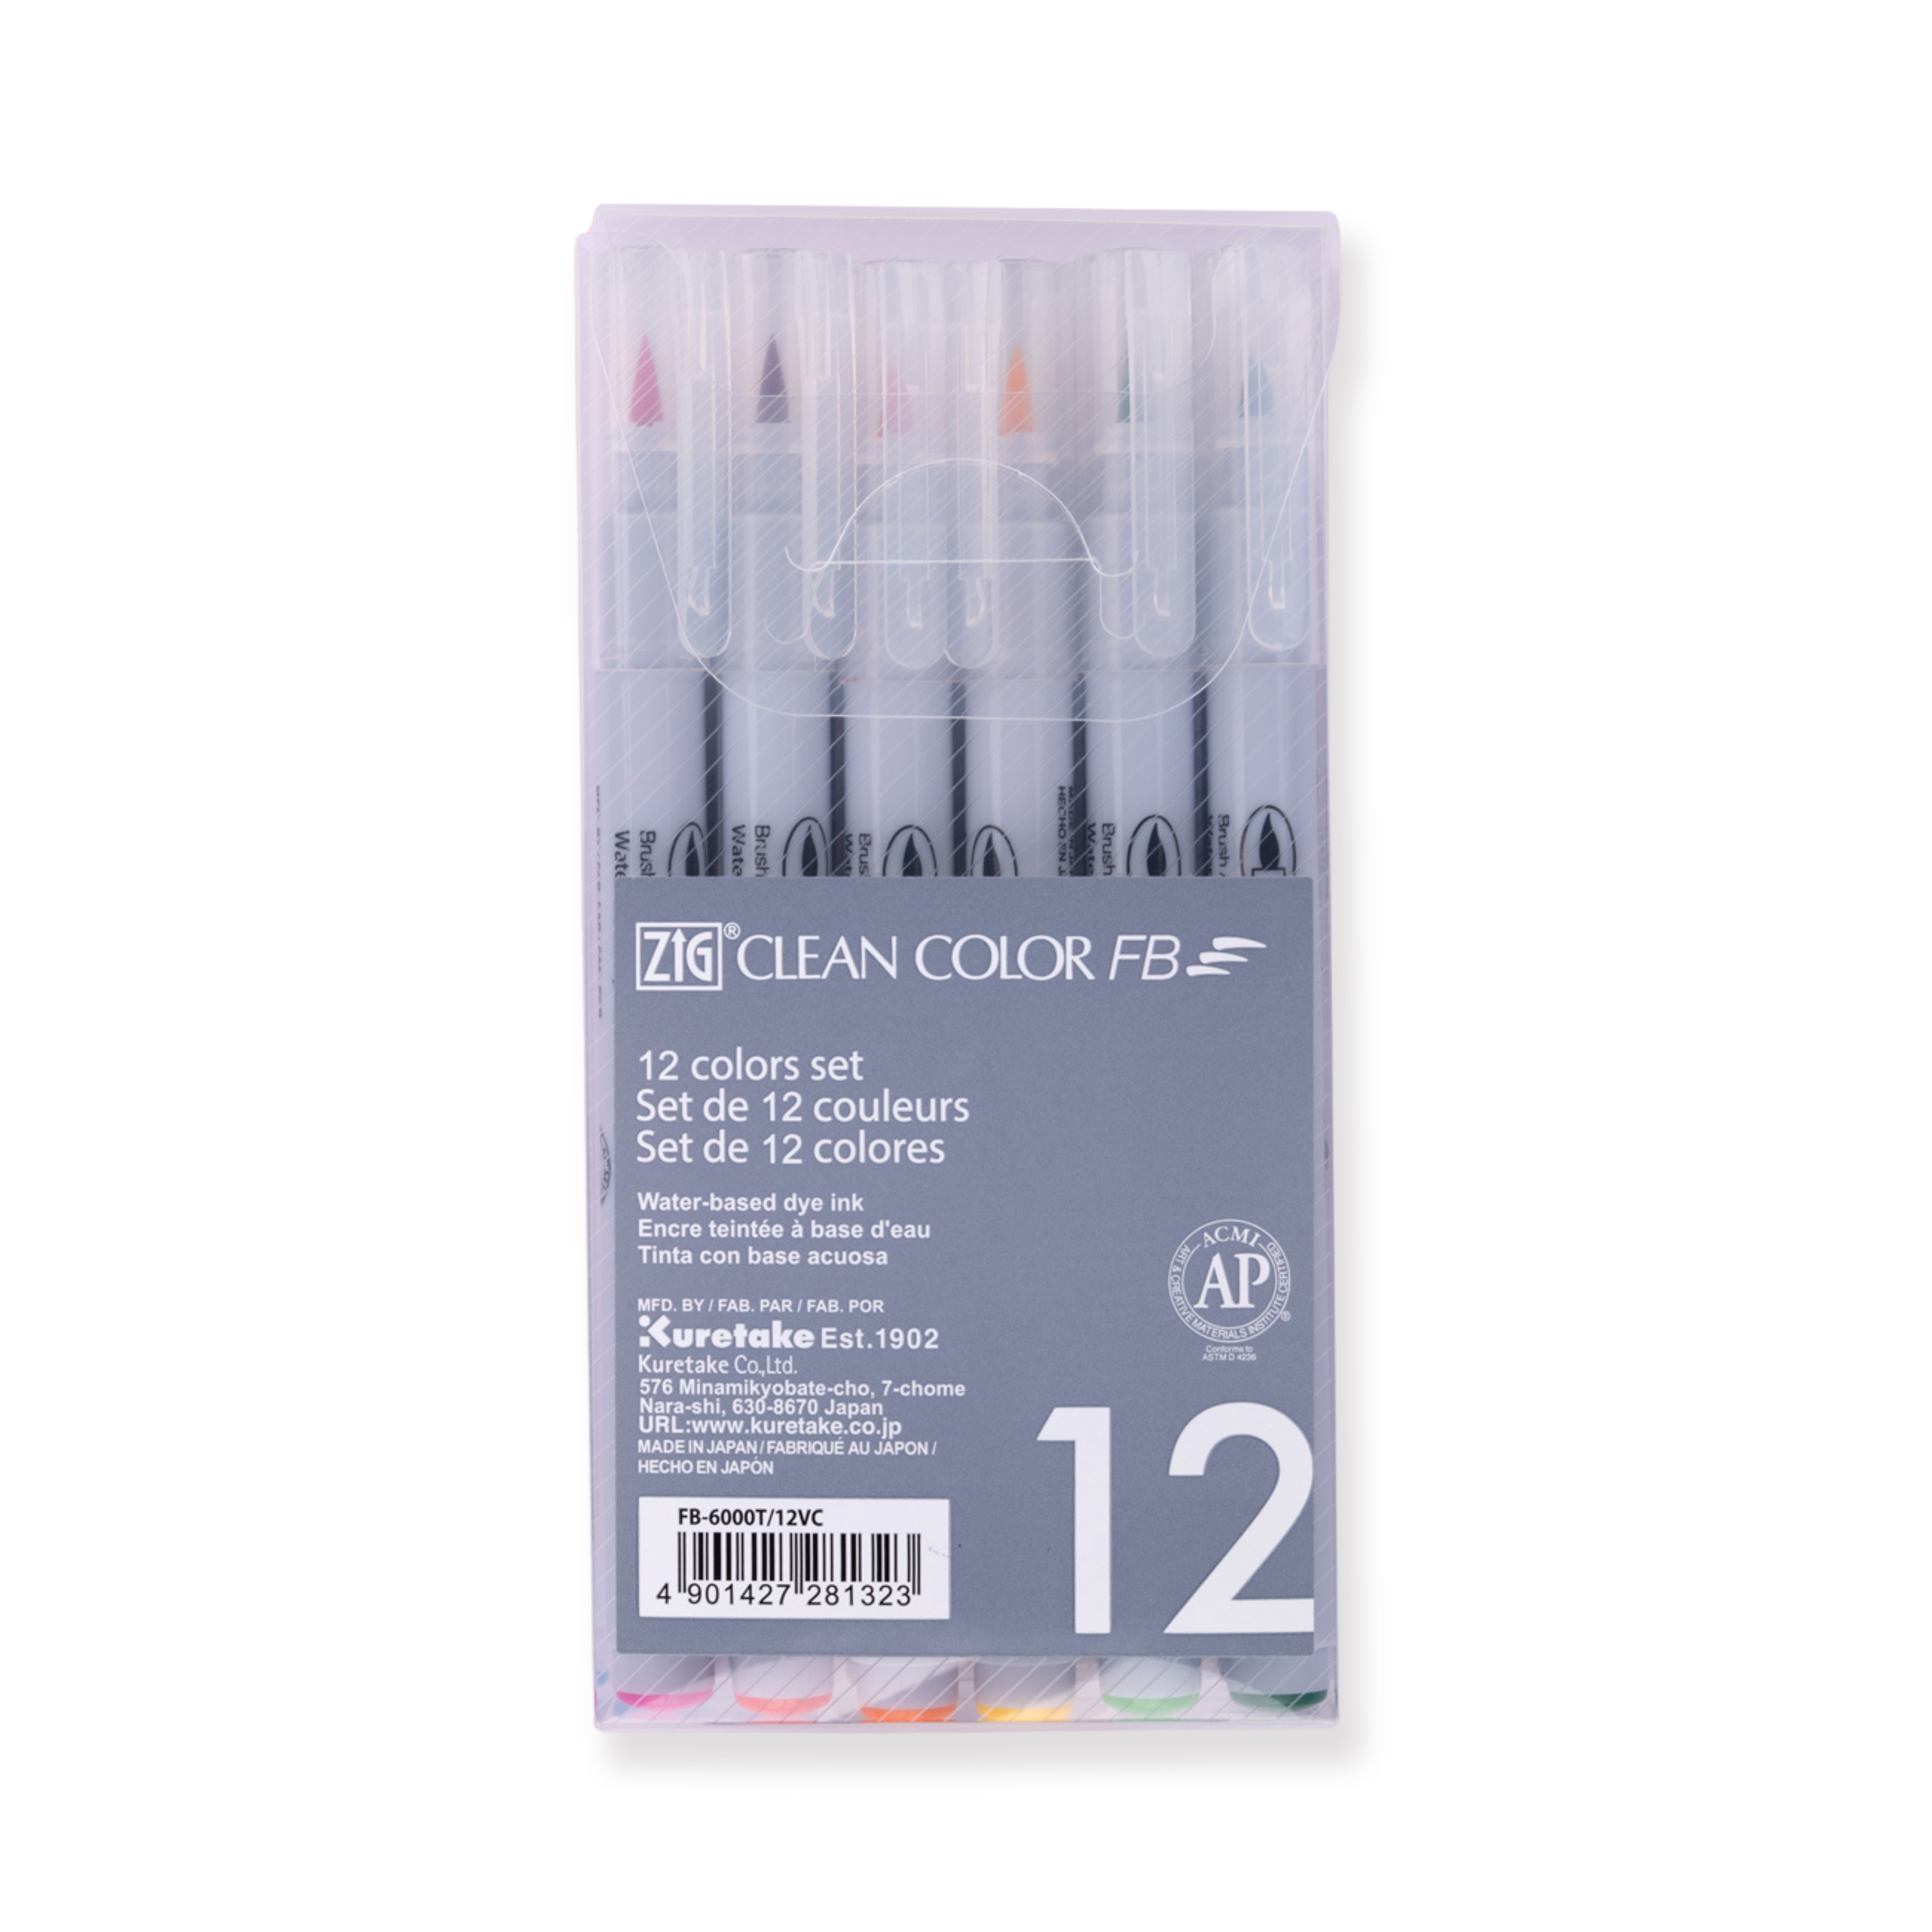 Kuretake ZIG Clean Color FB Filzstift-Pinselstift - 12-Farben-Set - Pure